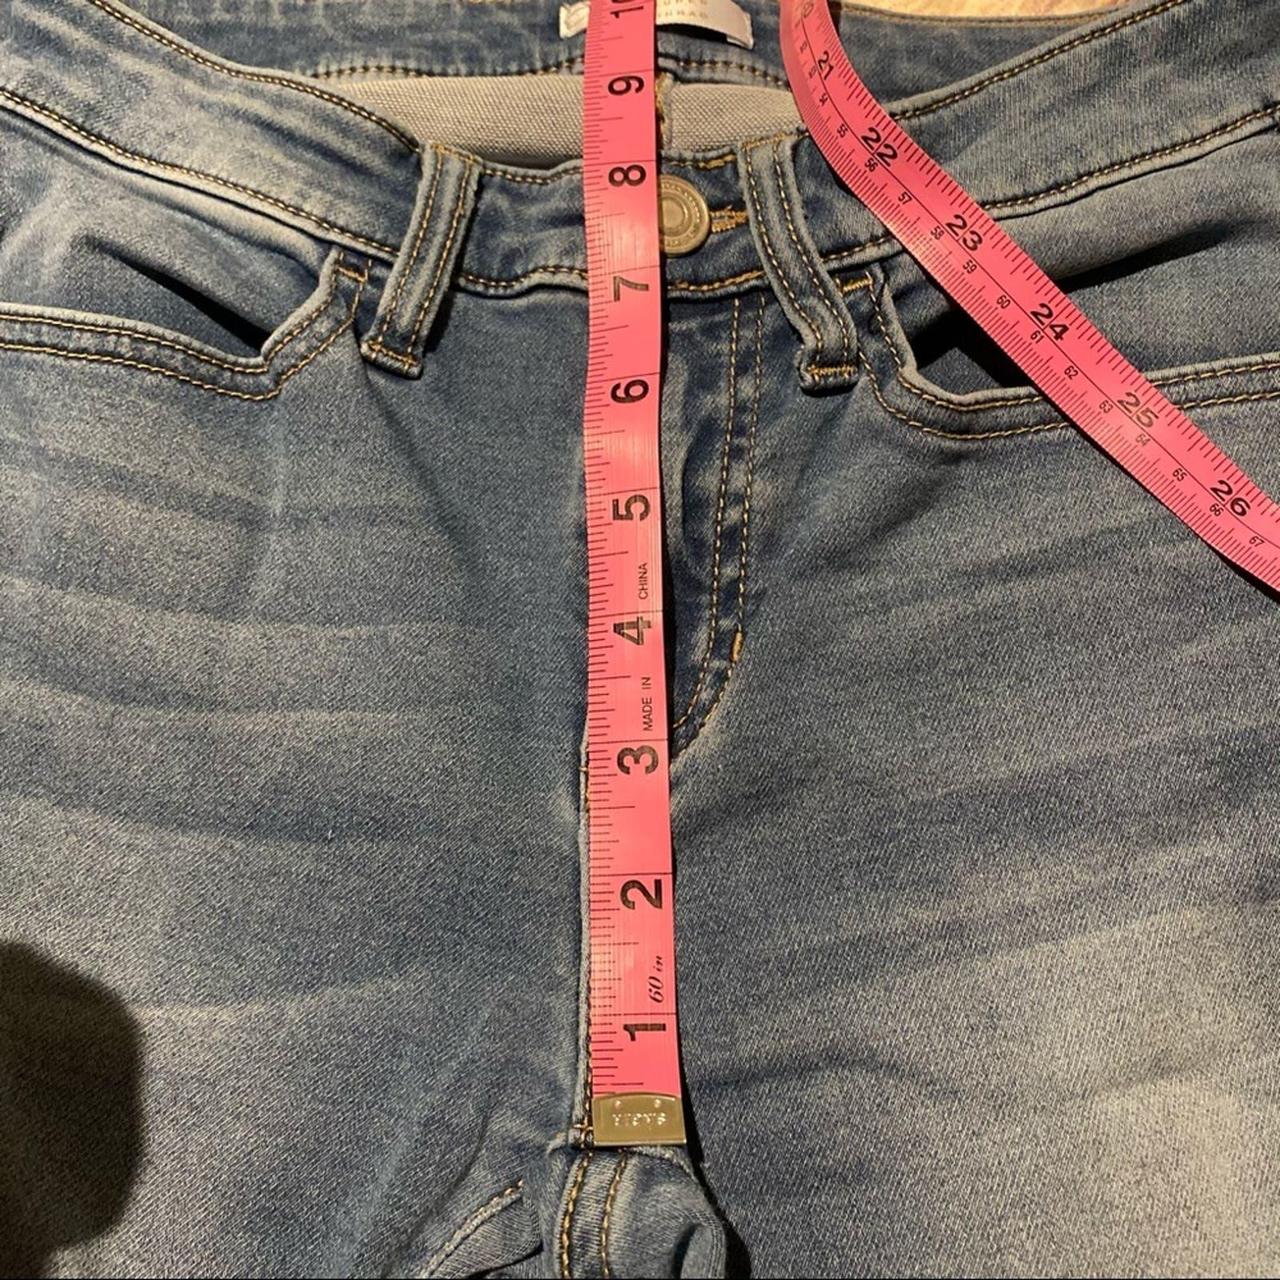 Lauren Conrad Jeans Skinny Ankle Size 4 Vintage - Depop